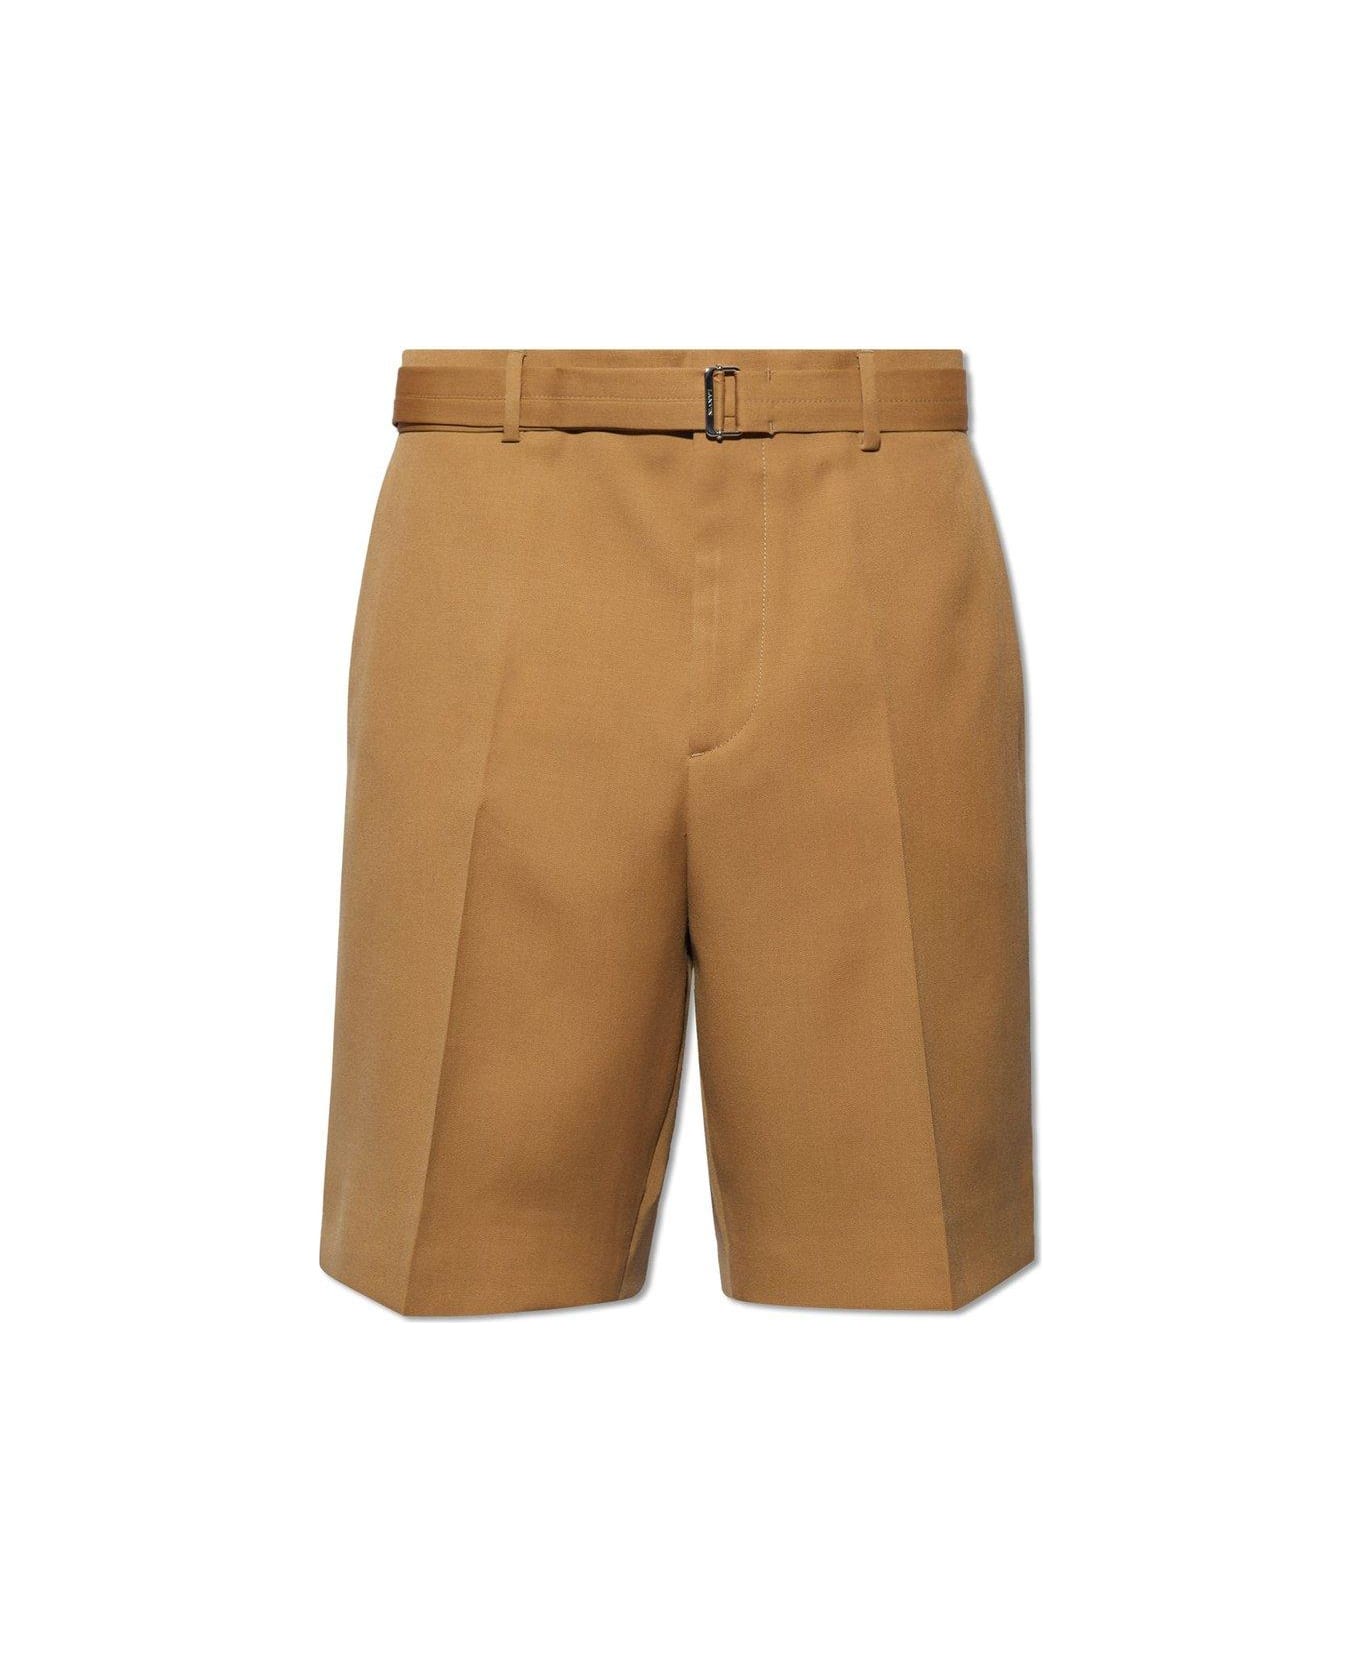 Lanvin Pressed Crease Belted Shorts - Desert